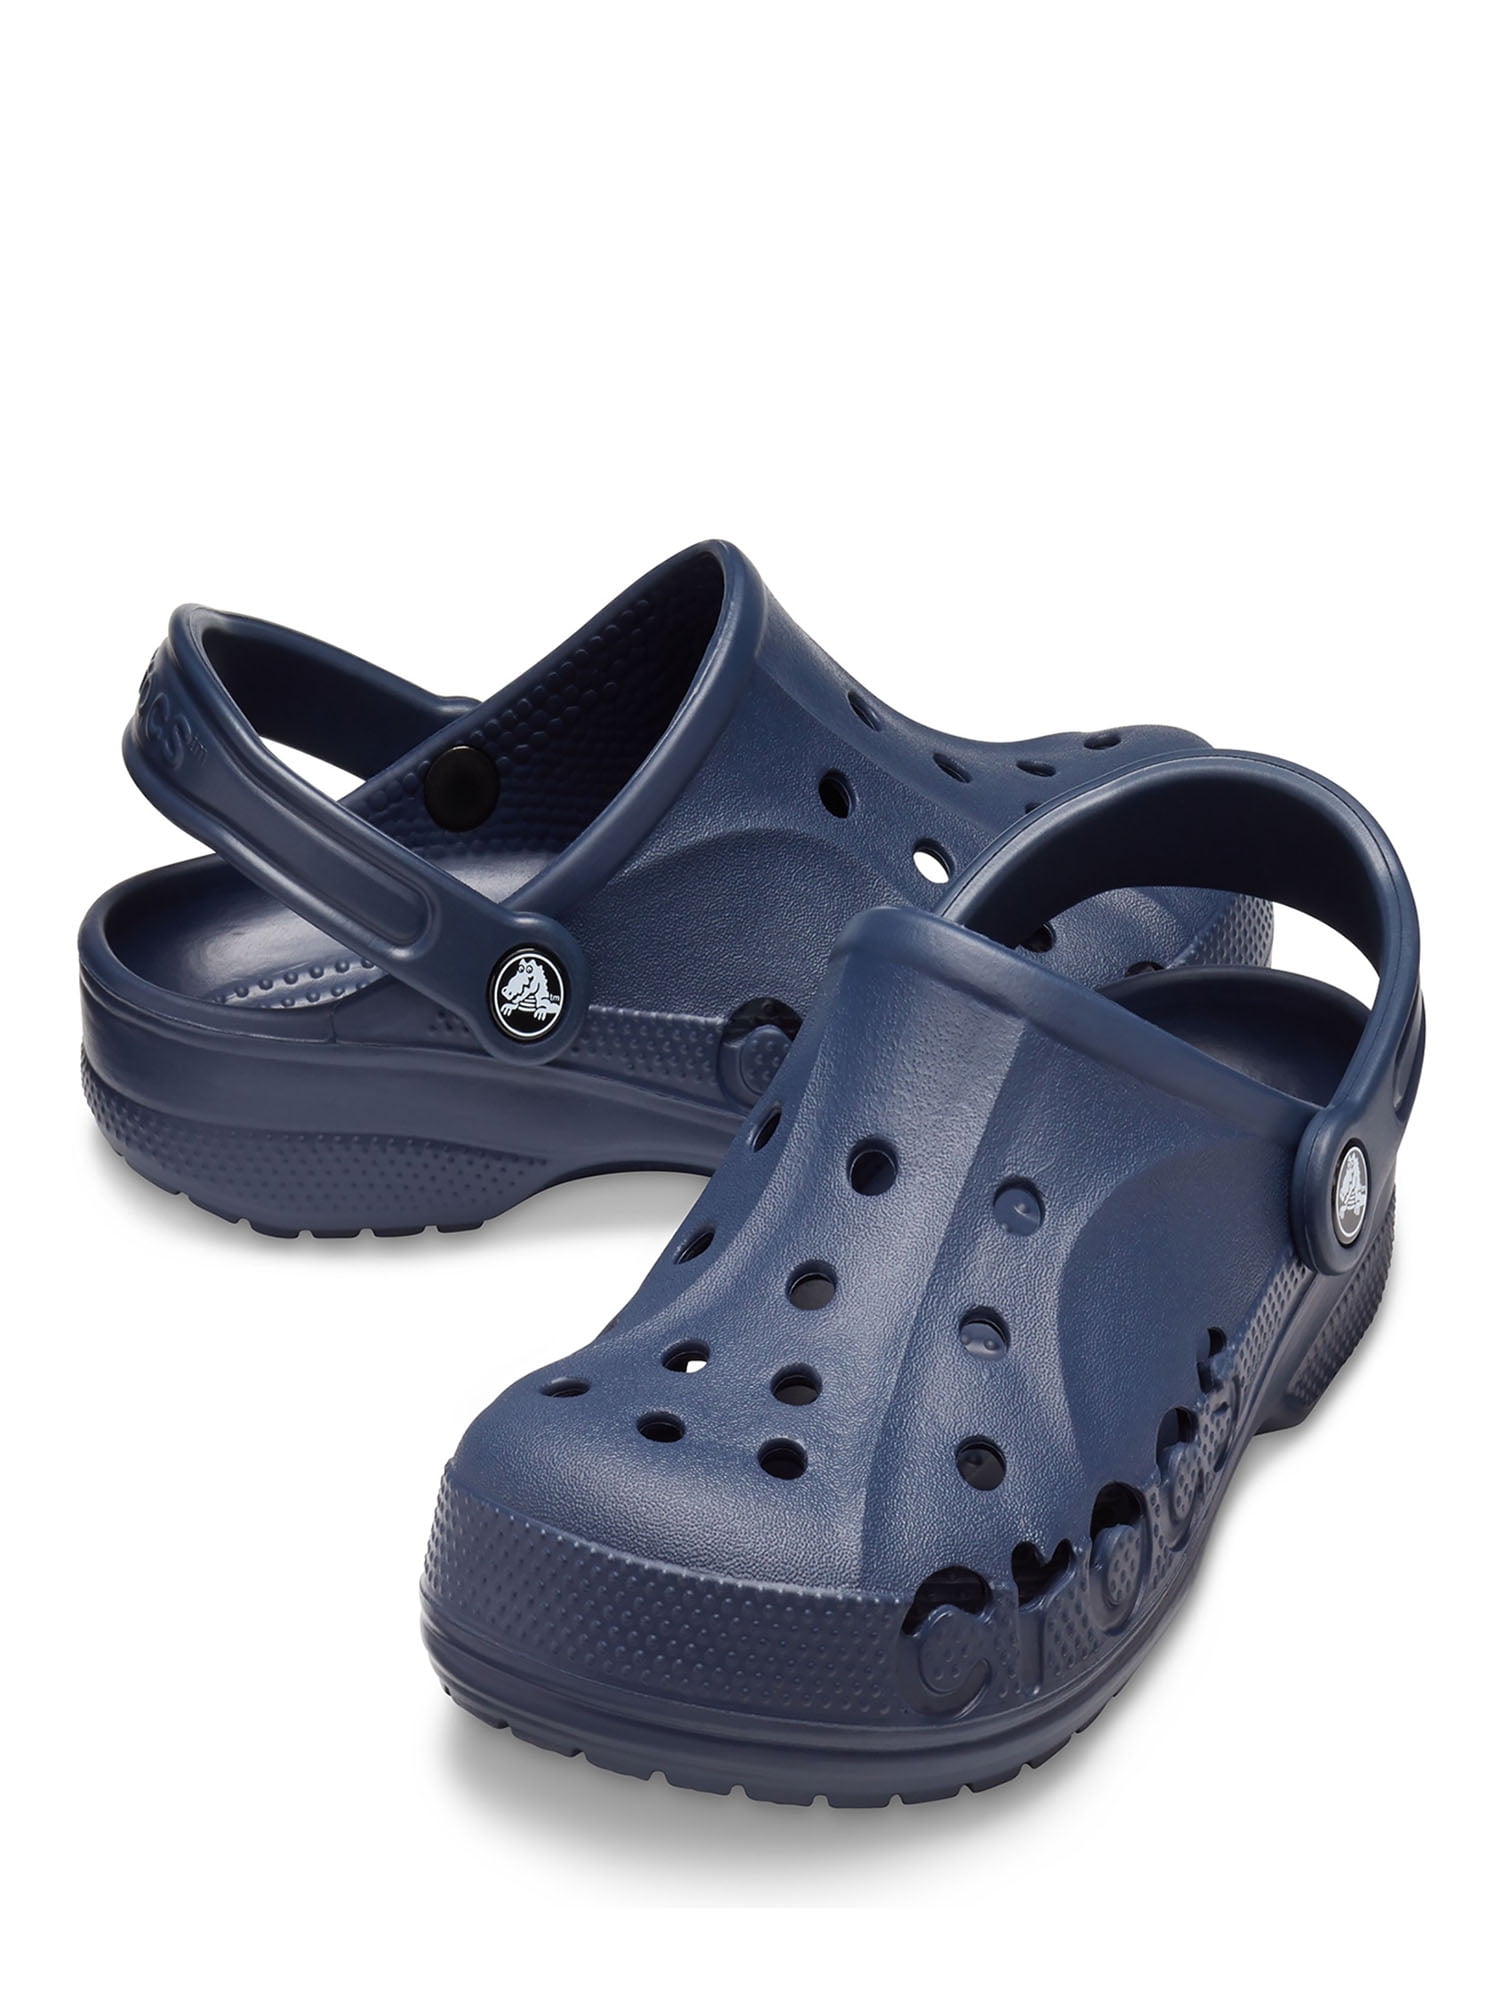 Мужские сабо с закрытым носом. Сабо Crocs Classic Clog. Crocs Classic Clog синие мужские. Crocs клоги Classic. Шлёпки сабо Crocs Classic Clog.